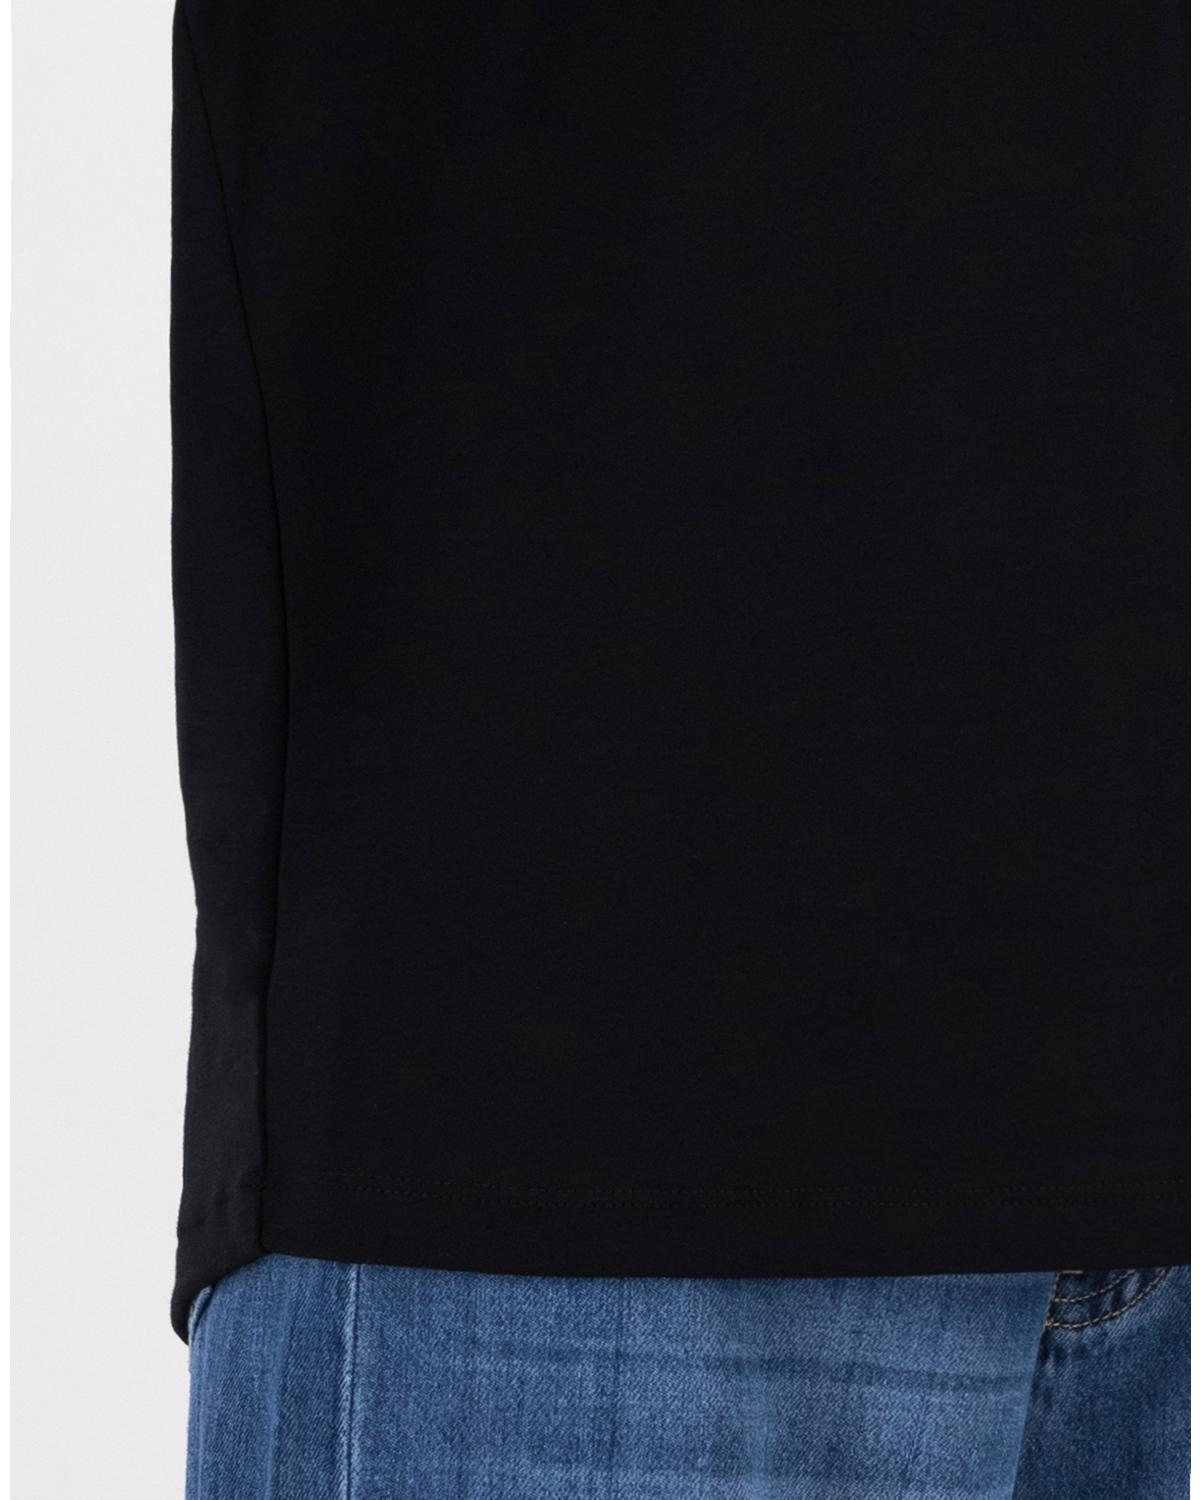 Celine Basic T-Shirt -  Black